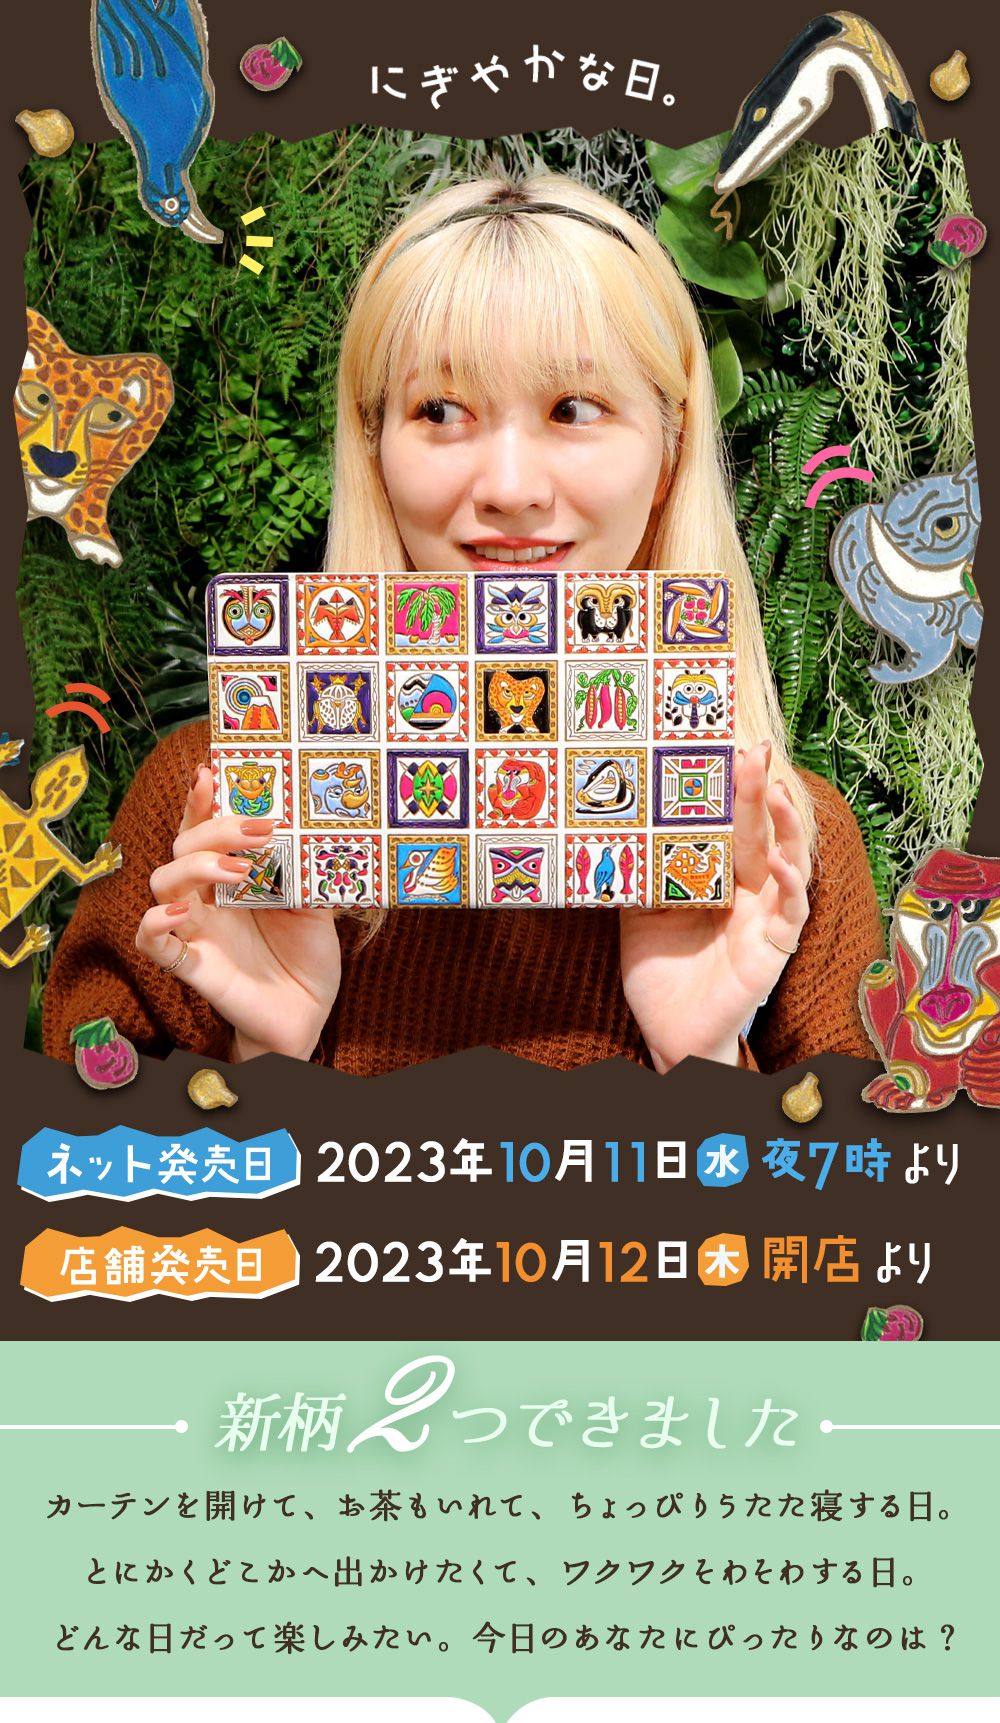 2023 ニューコレクションTOP - 文庫屋「大関」